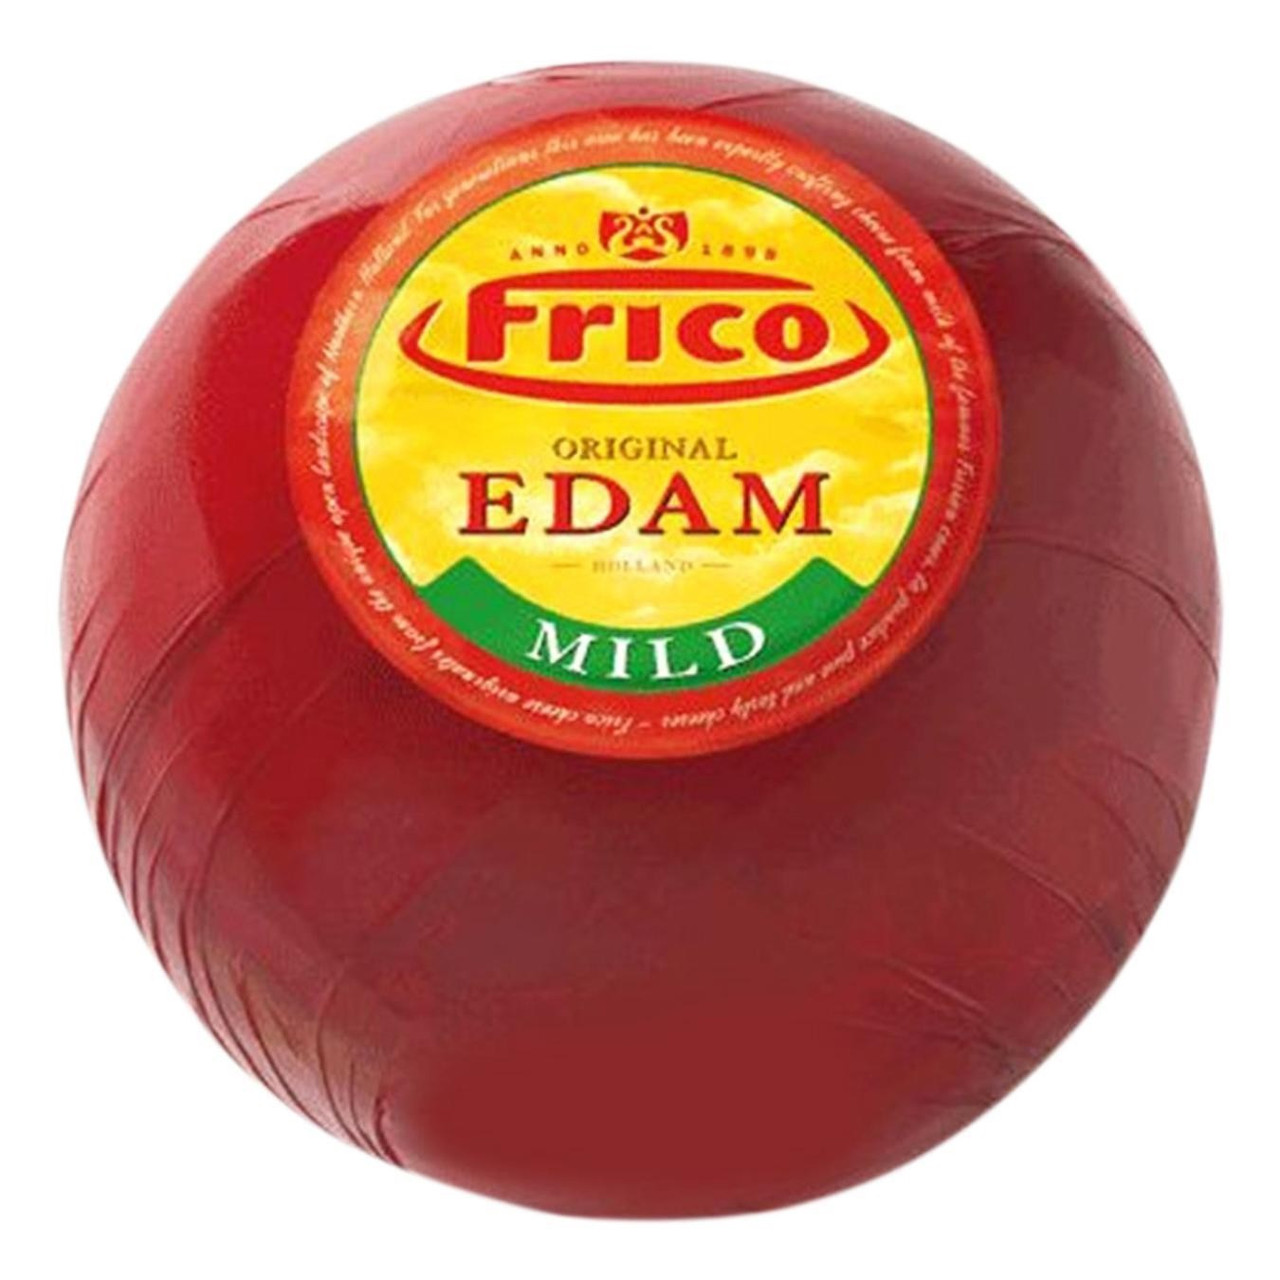 Сир М'який Едам 40% Фріко Frico Edam Mild Головка 800-900 г Нідерланди